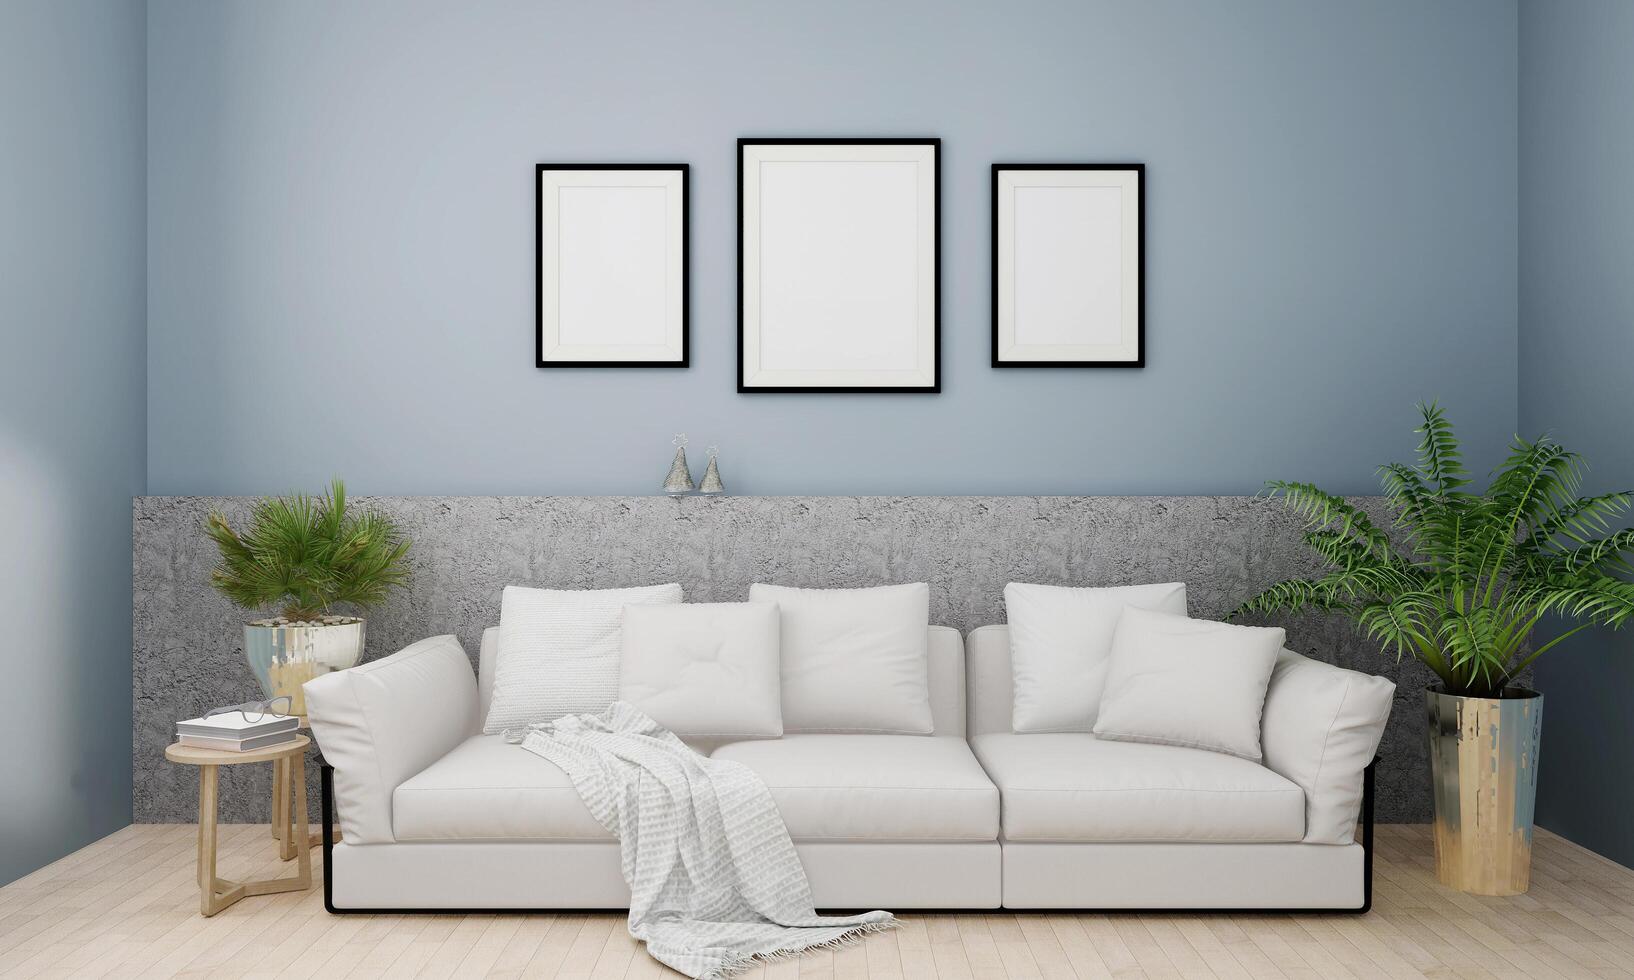 un grupo de marcos de afiches simulados en la parte superior de la pared interior moderna del sofá con un árbol, sala de estar, presentación en 3d, ilustración en 3d. fondo de color claro. foto